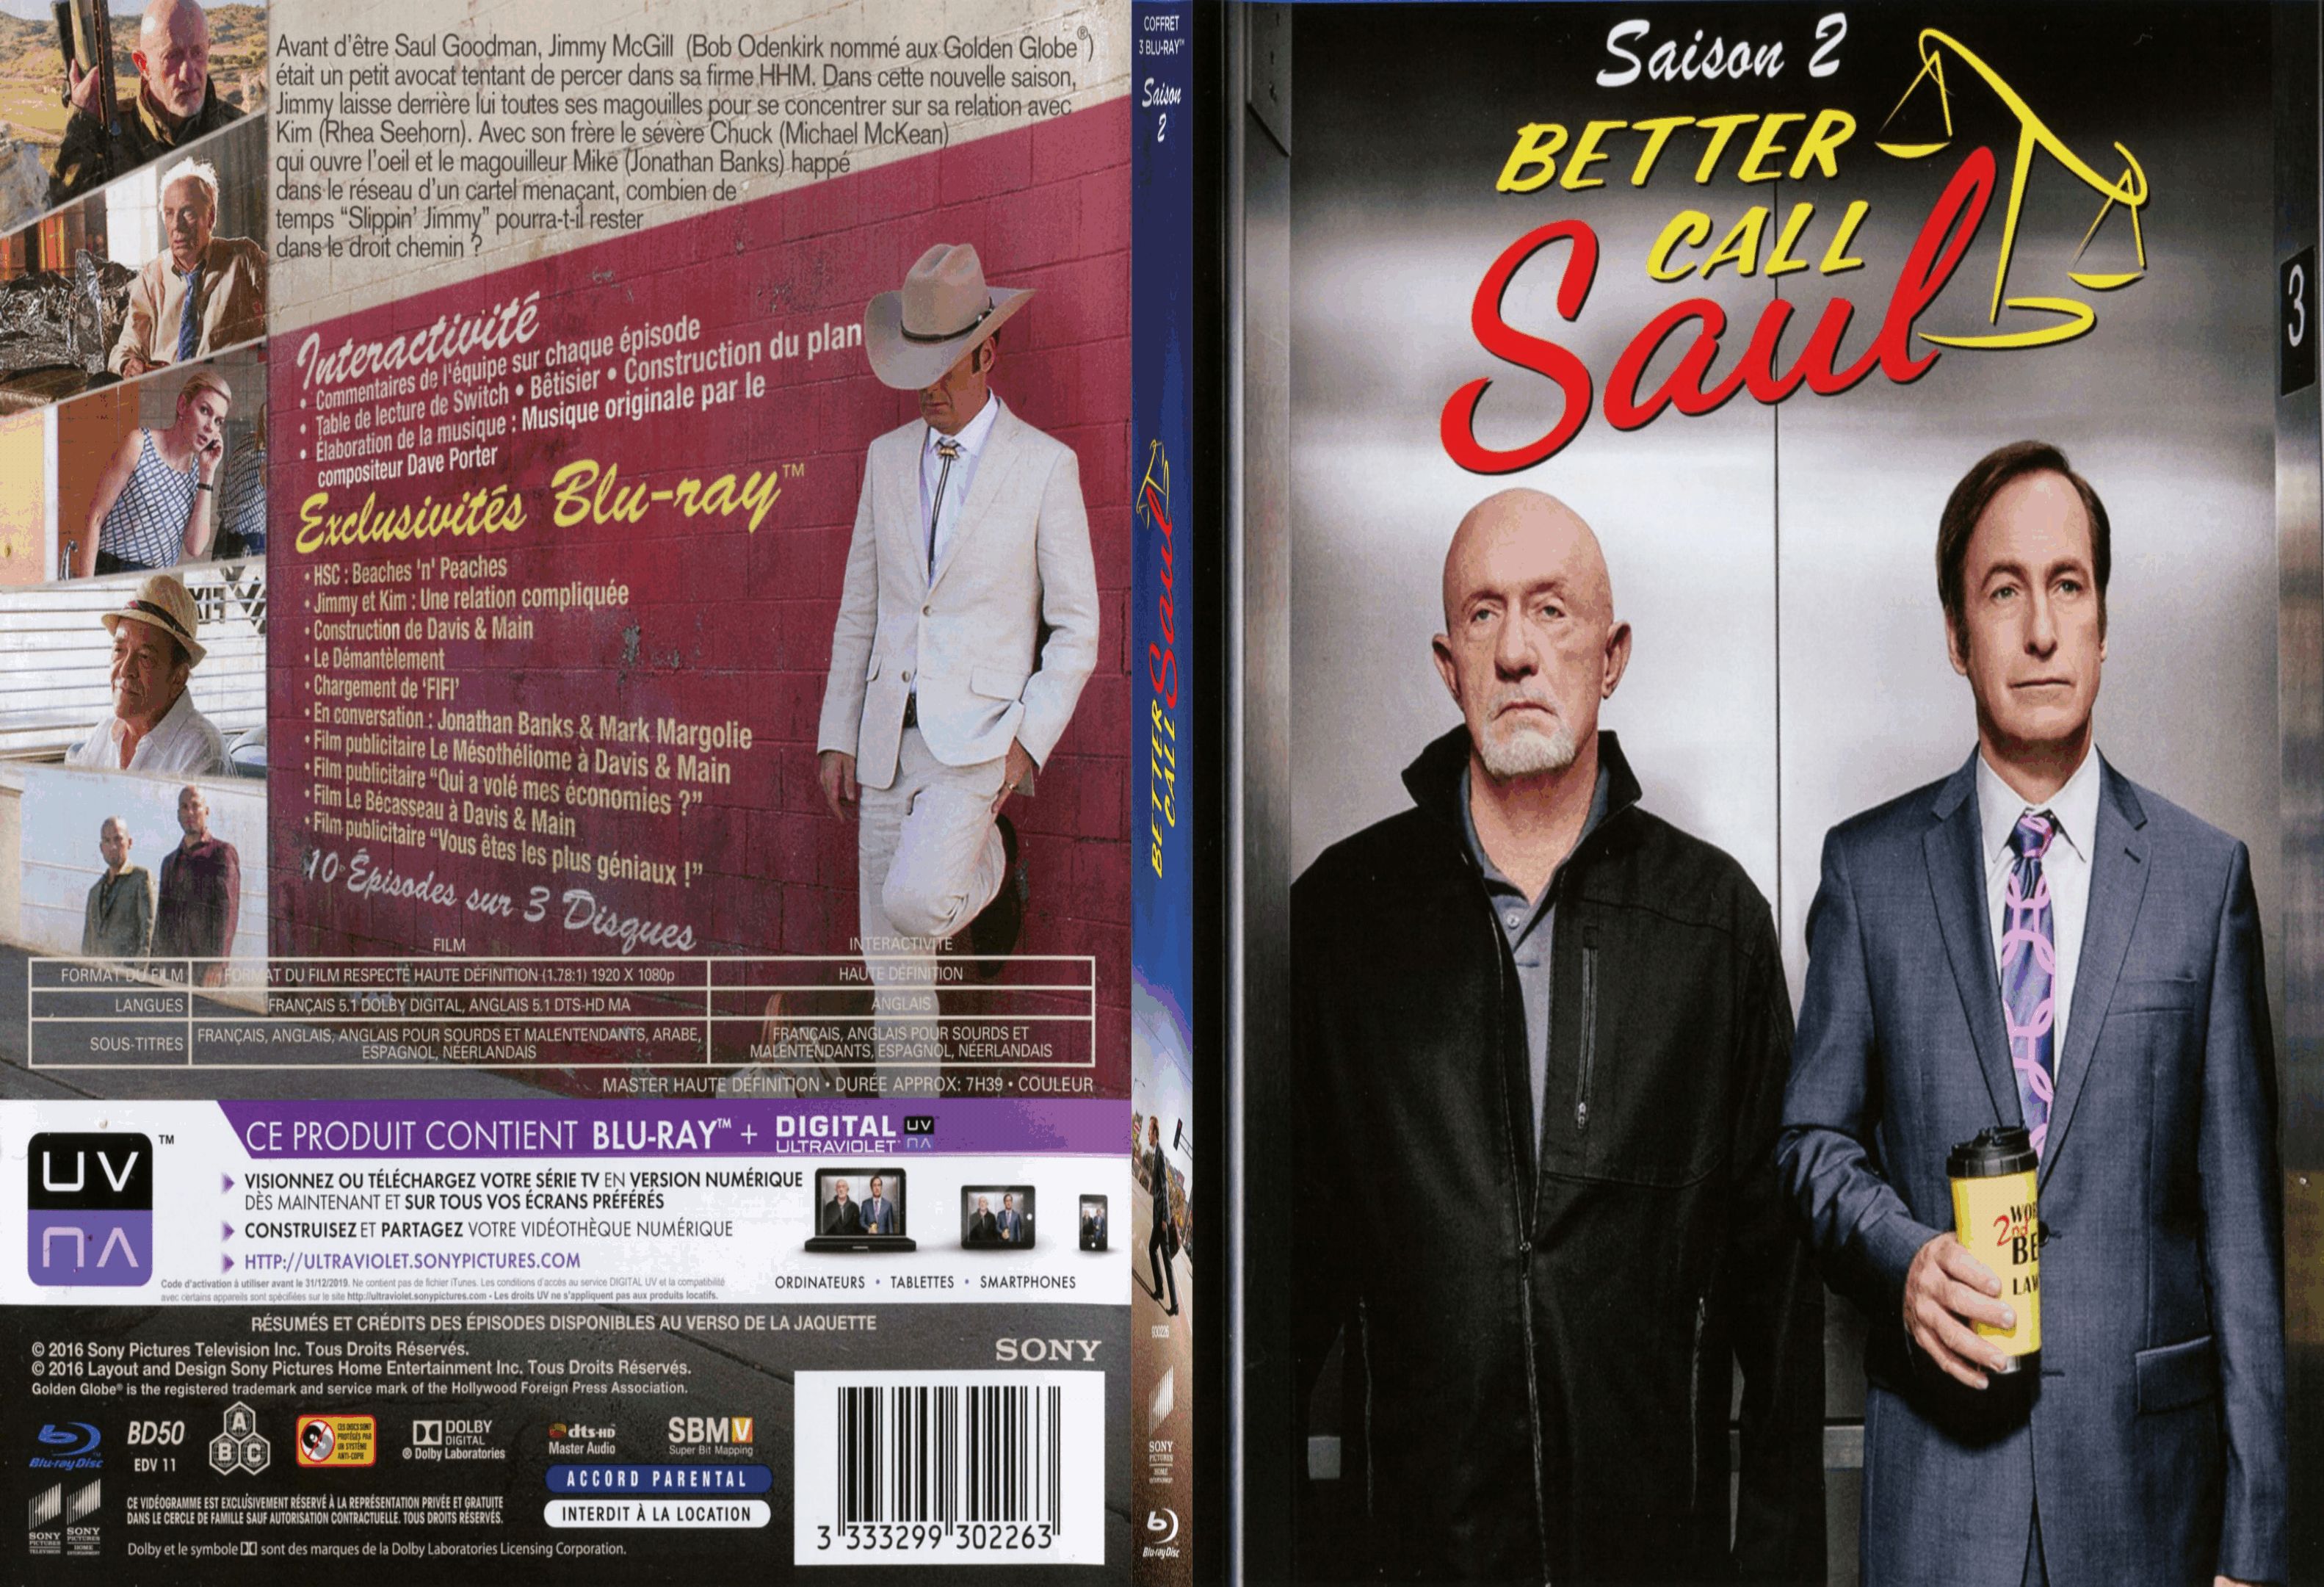 Jaquette DVD Better call saul saison 2 - SLIM